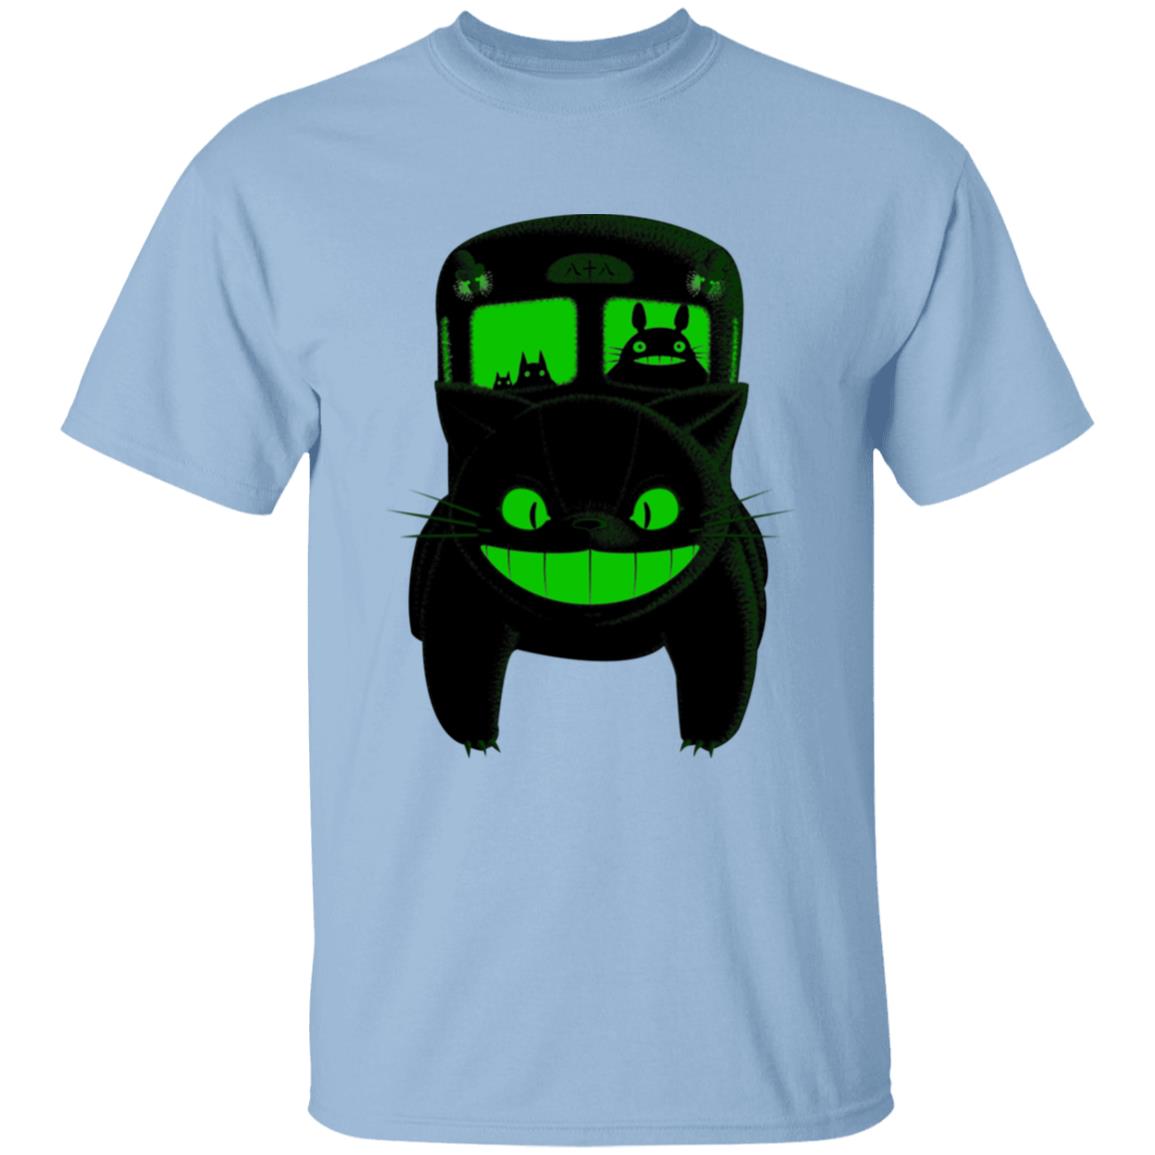 My Neighbor Totoro – Neon Catbus T Shirt